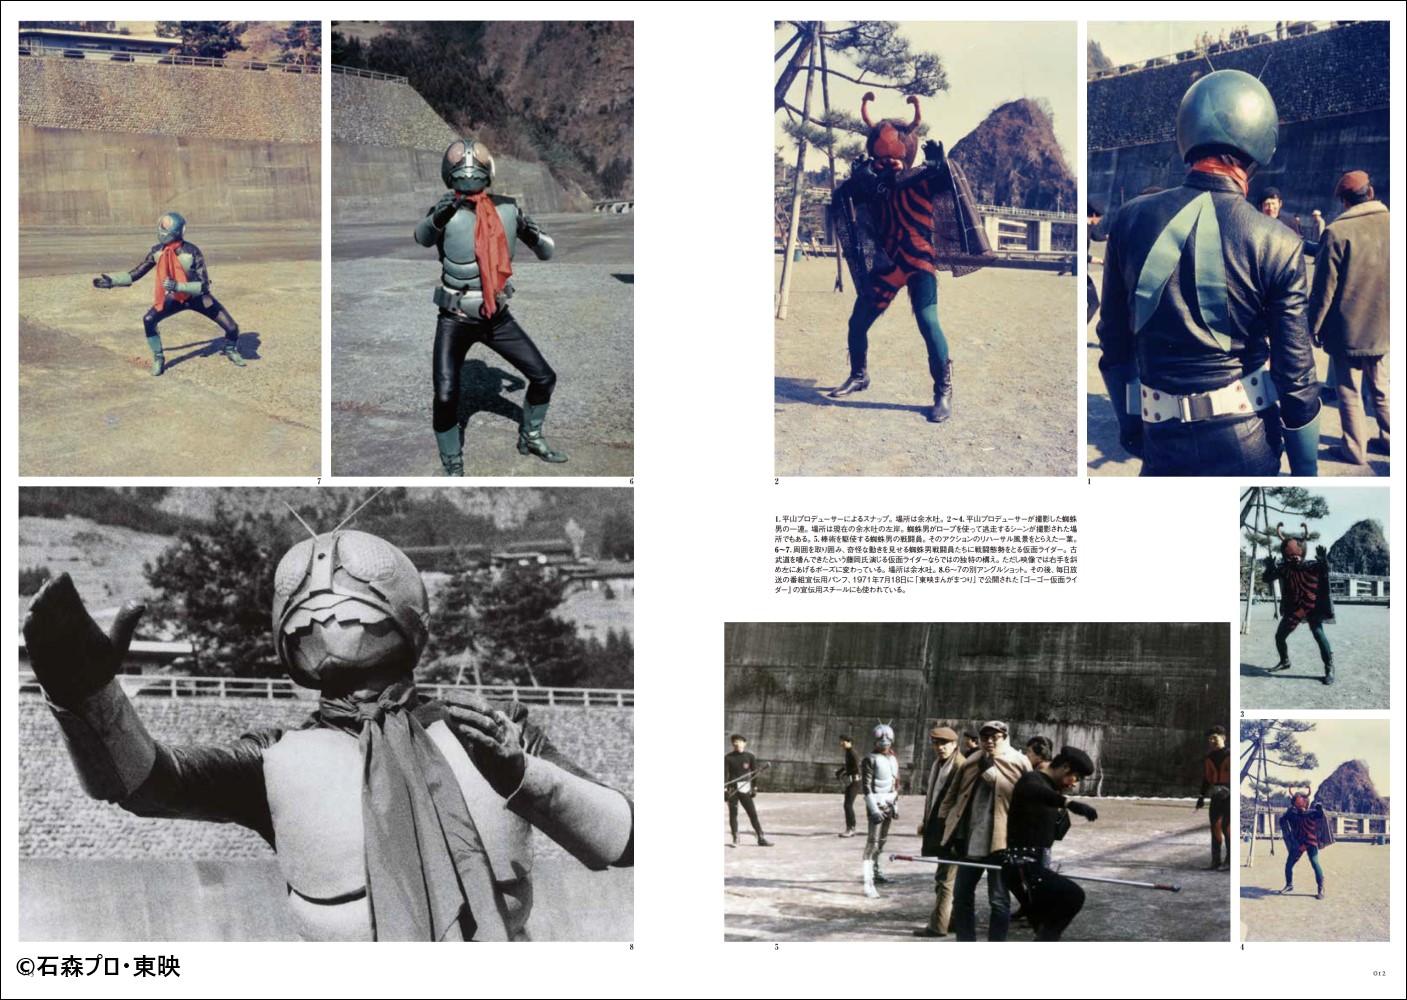 仮面ライダー資料写真集1971-1973 『仮面ライダー』生誕50周年記念 